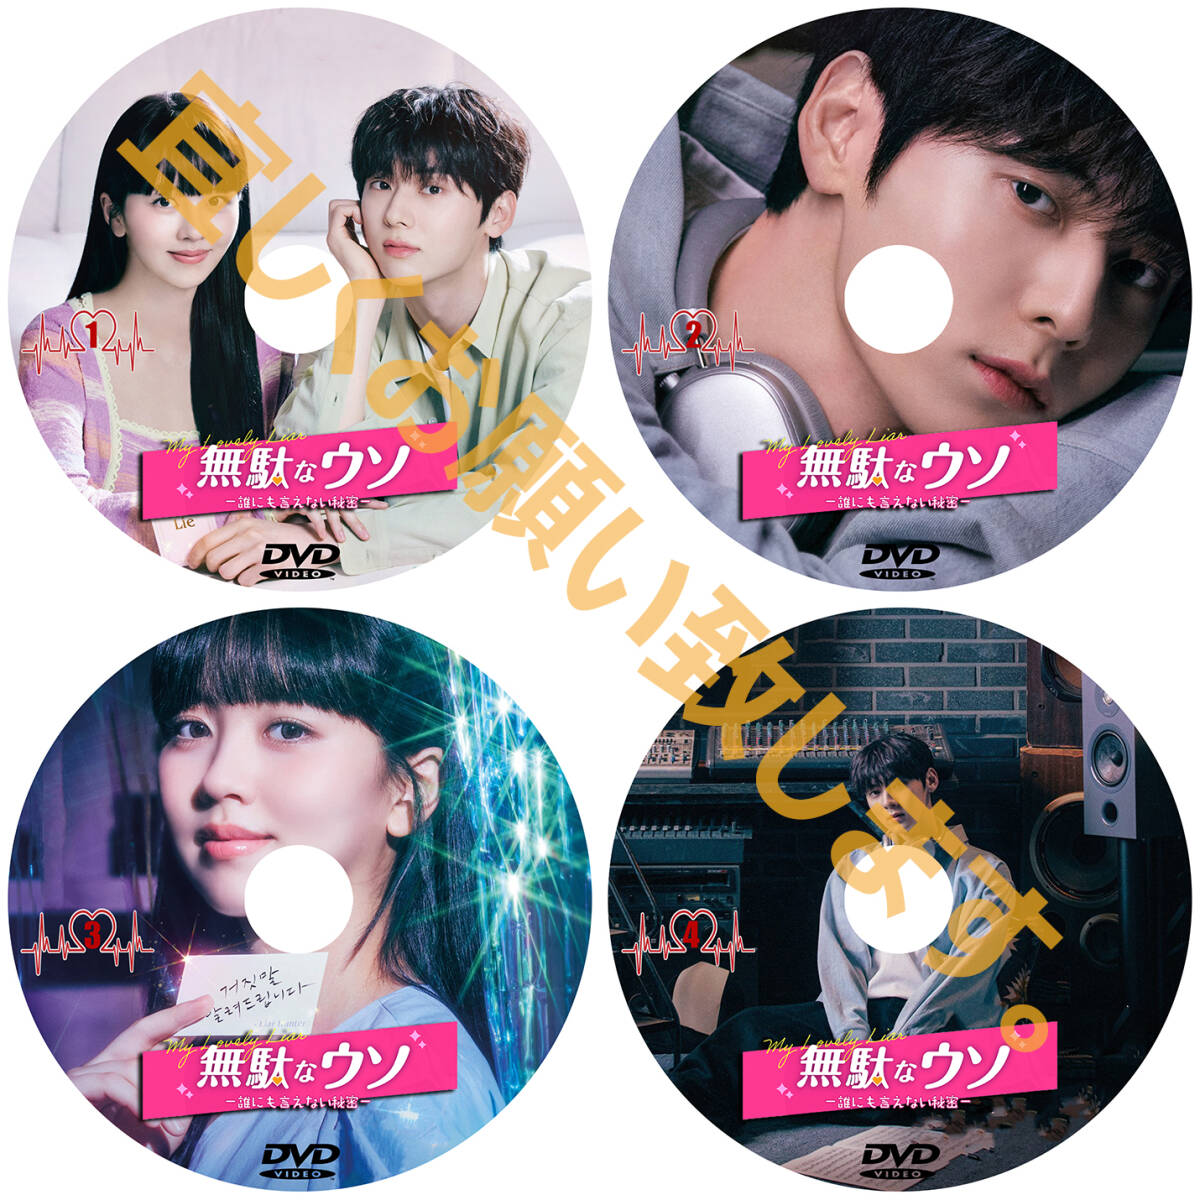 まとめ 買い1点「moon」DVD商品の説明から1点作品をお選びください。「by」【韓国ドラマ】「sea」